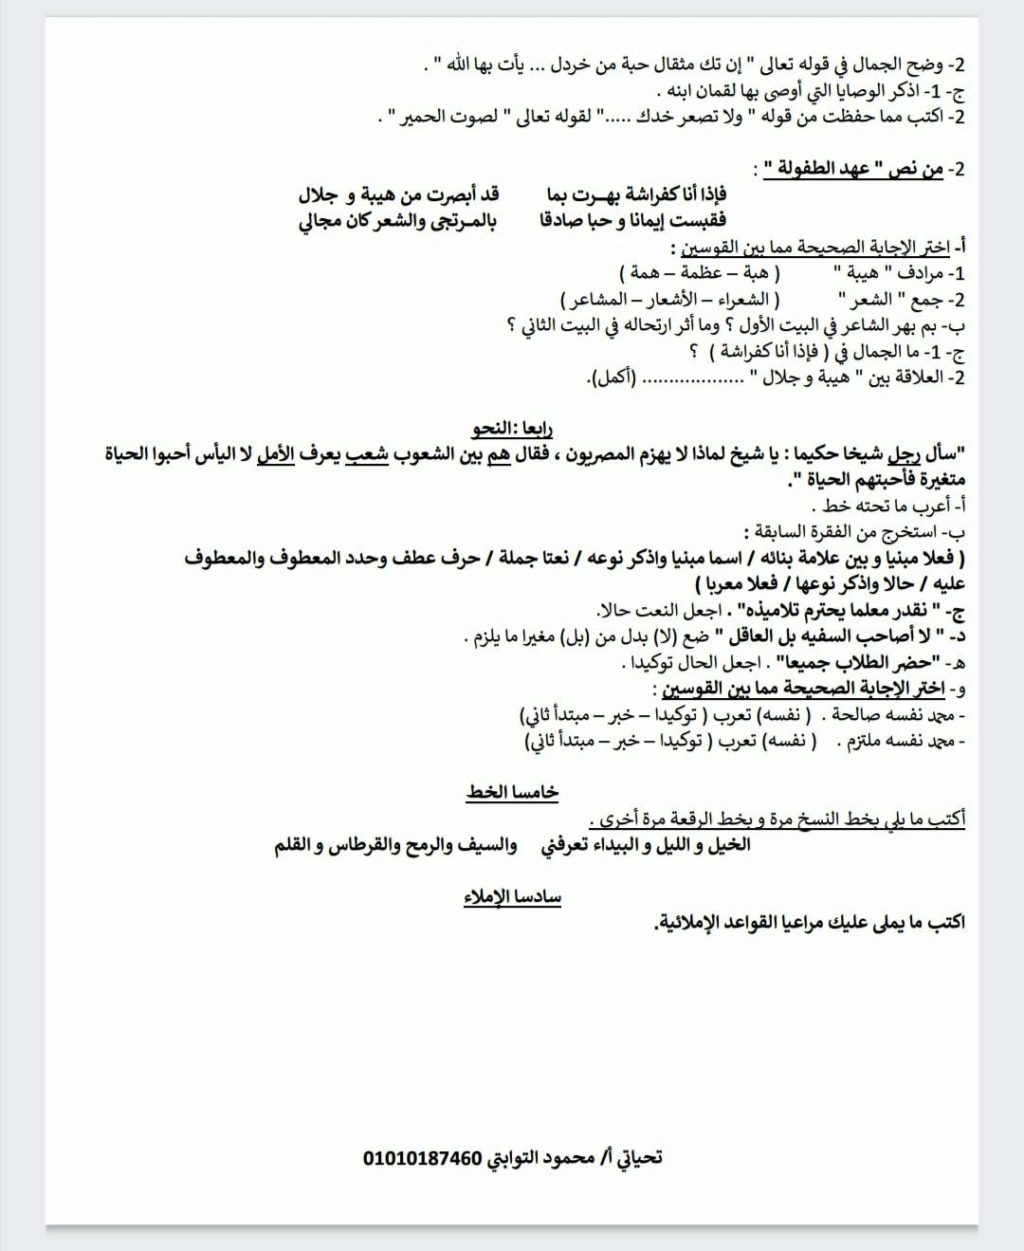 اختبار لغة عربية للصف الثاني الإعدادي الترم الاول 2021 أ/ محمود التوابتي 22077